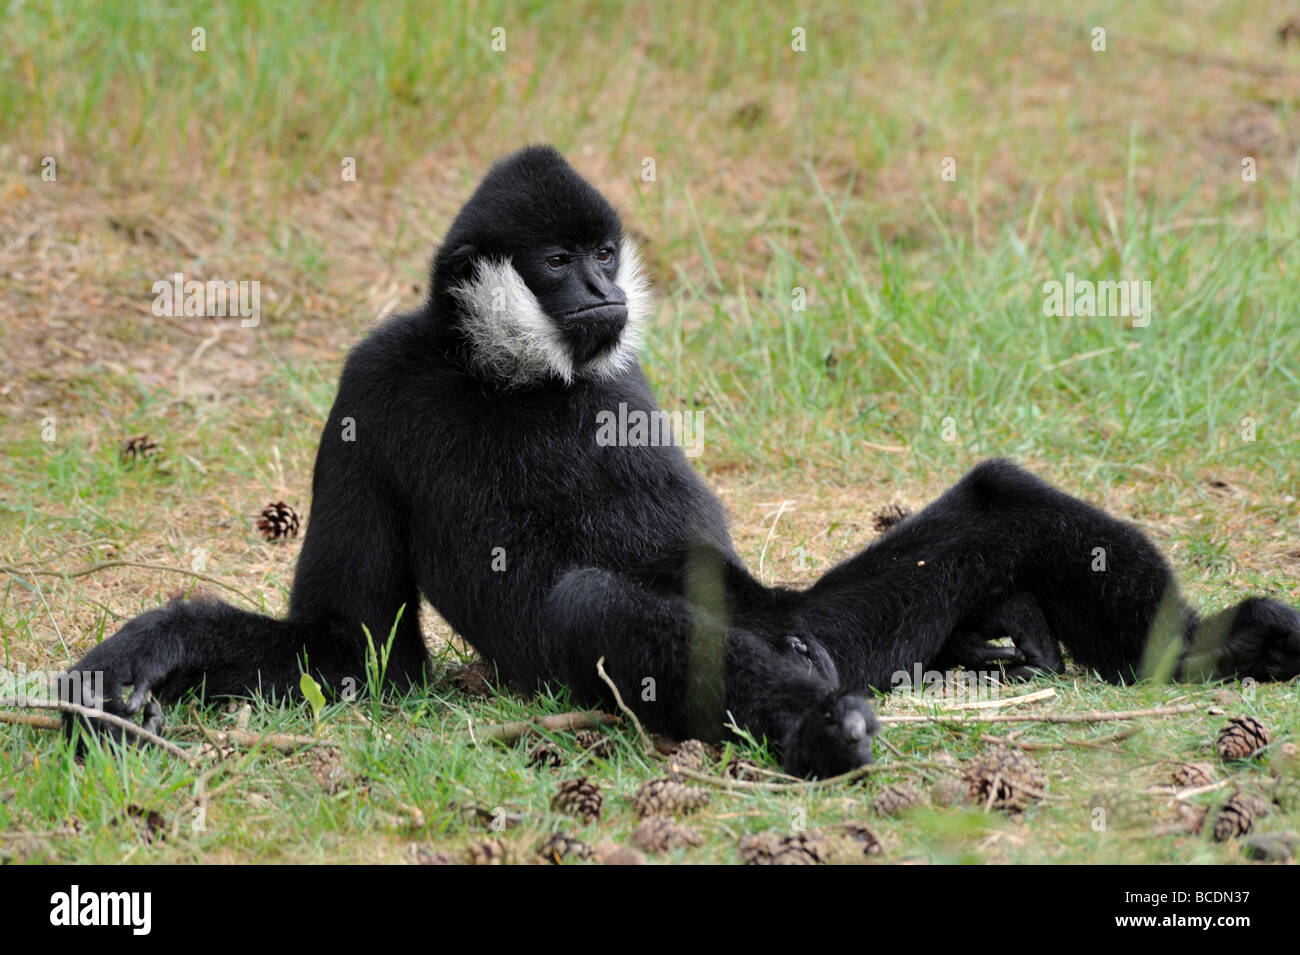 Gibbon à joues blanches homme Nomascus leucogenys dans un funny pose Banque D'Images